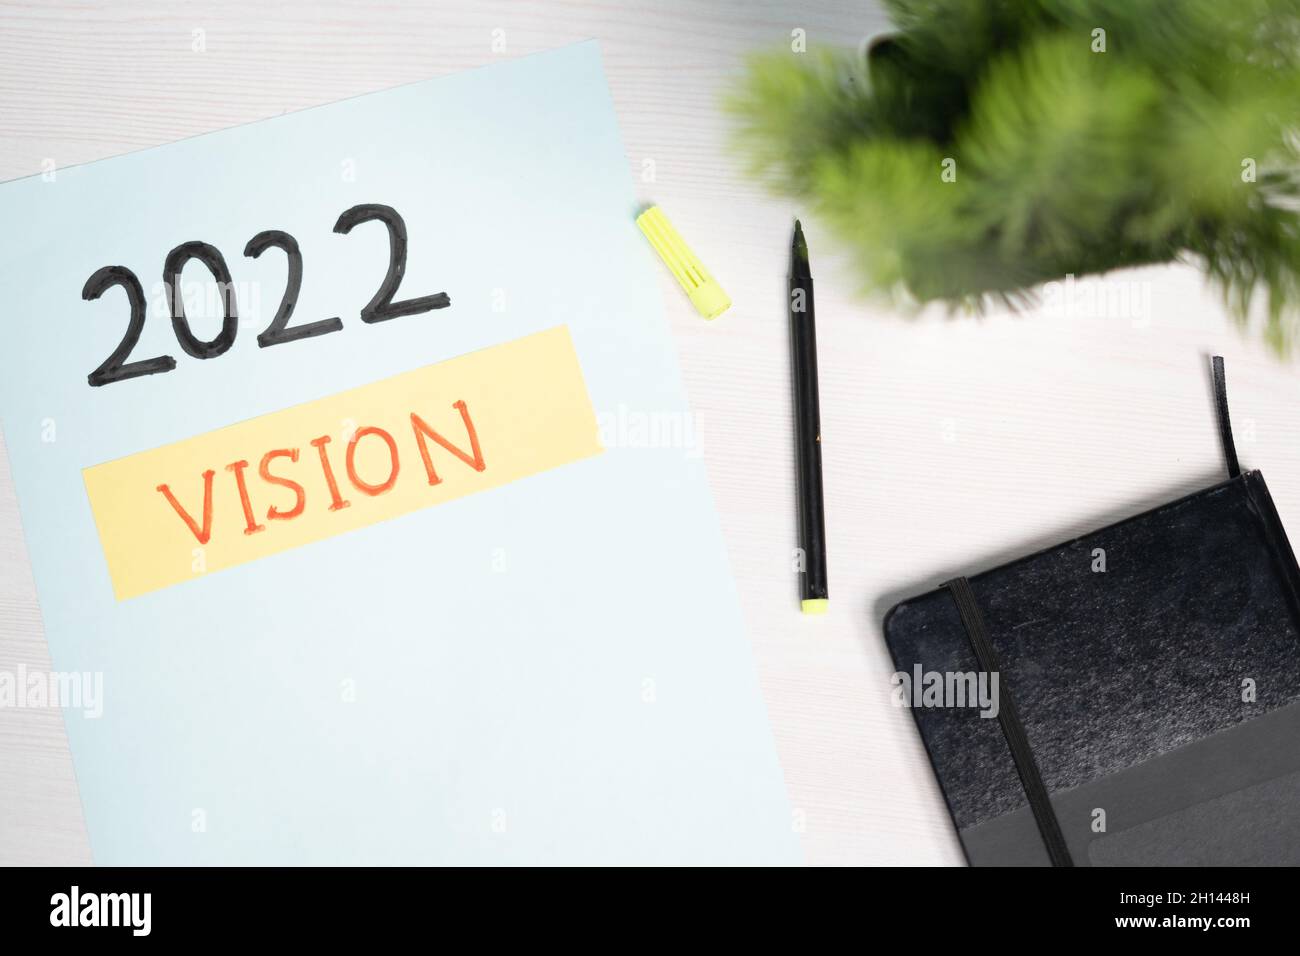 Vue de dessus de la vision écrite de 2022 sur papier - concept de nouvelle stratégie et établissement ou planification d'objectifs futurs. Banque D'Images